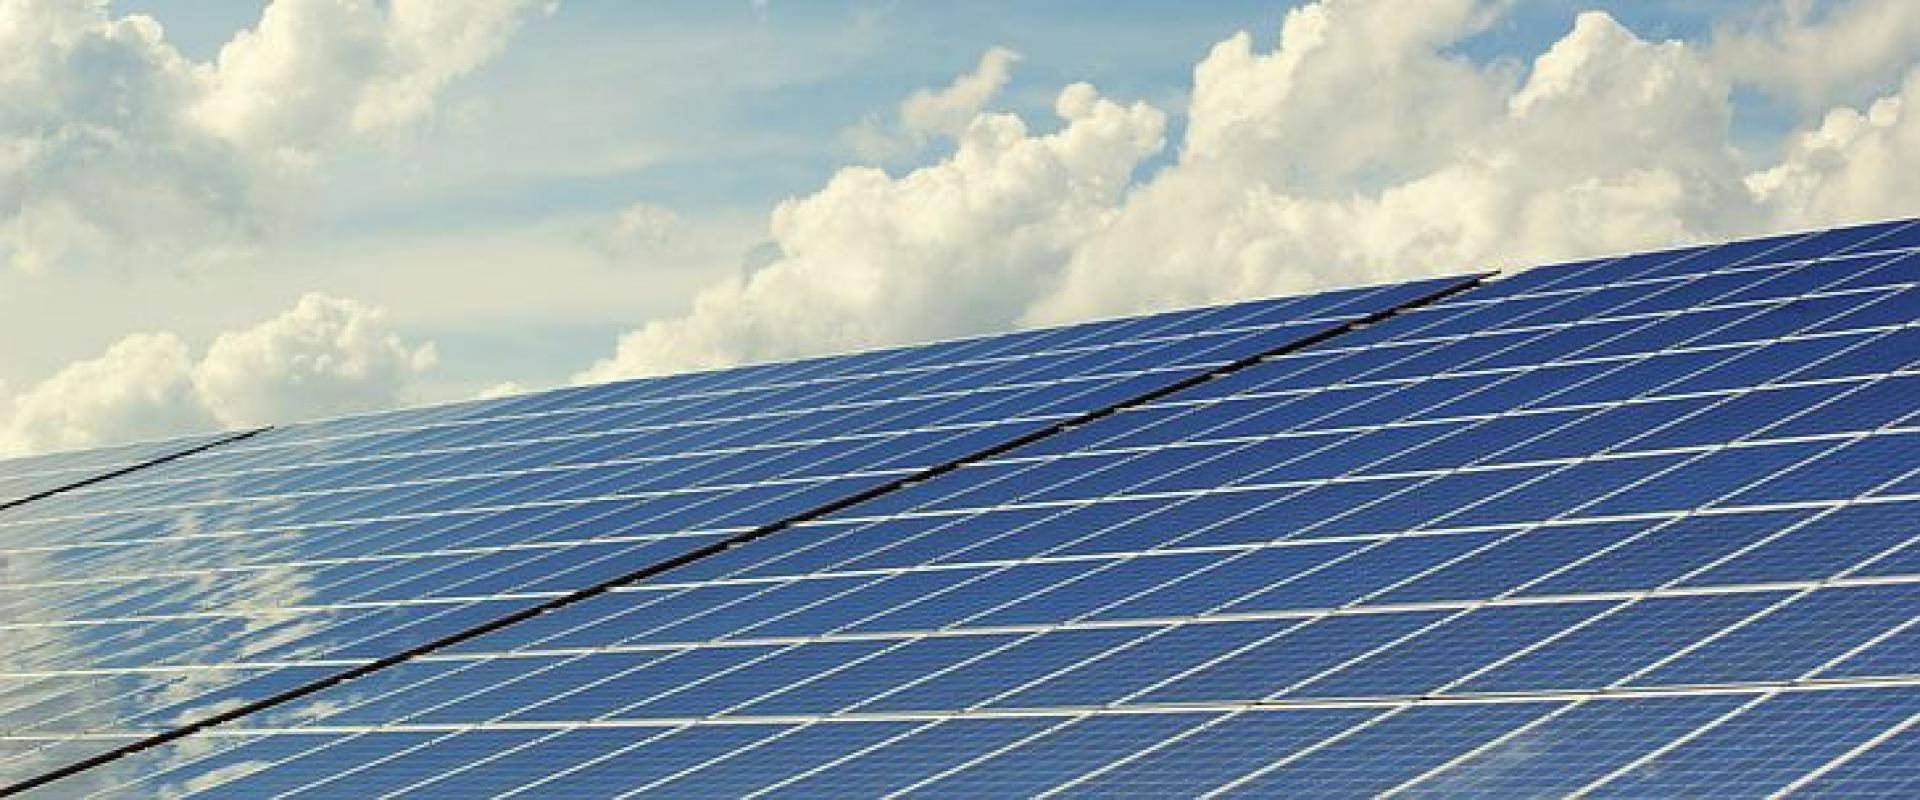 Come abbattere i costi grazie all'energia rinnovabile: Pannelli solari termici